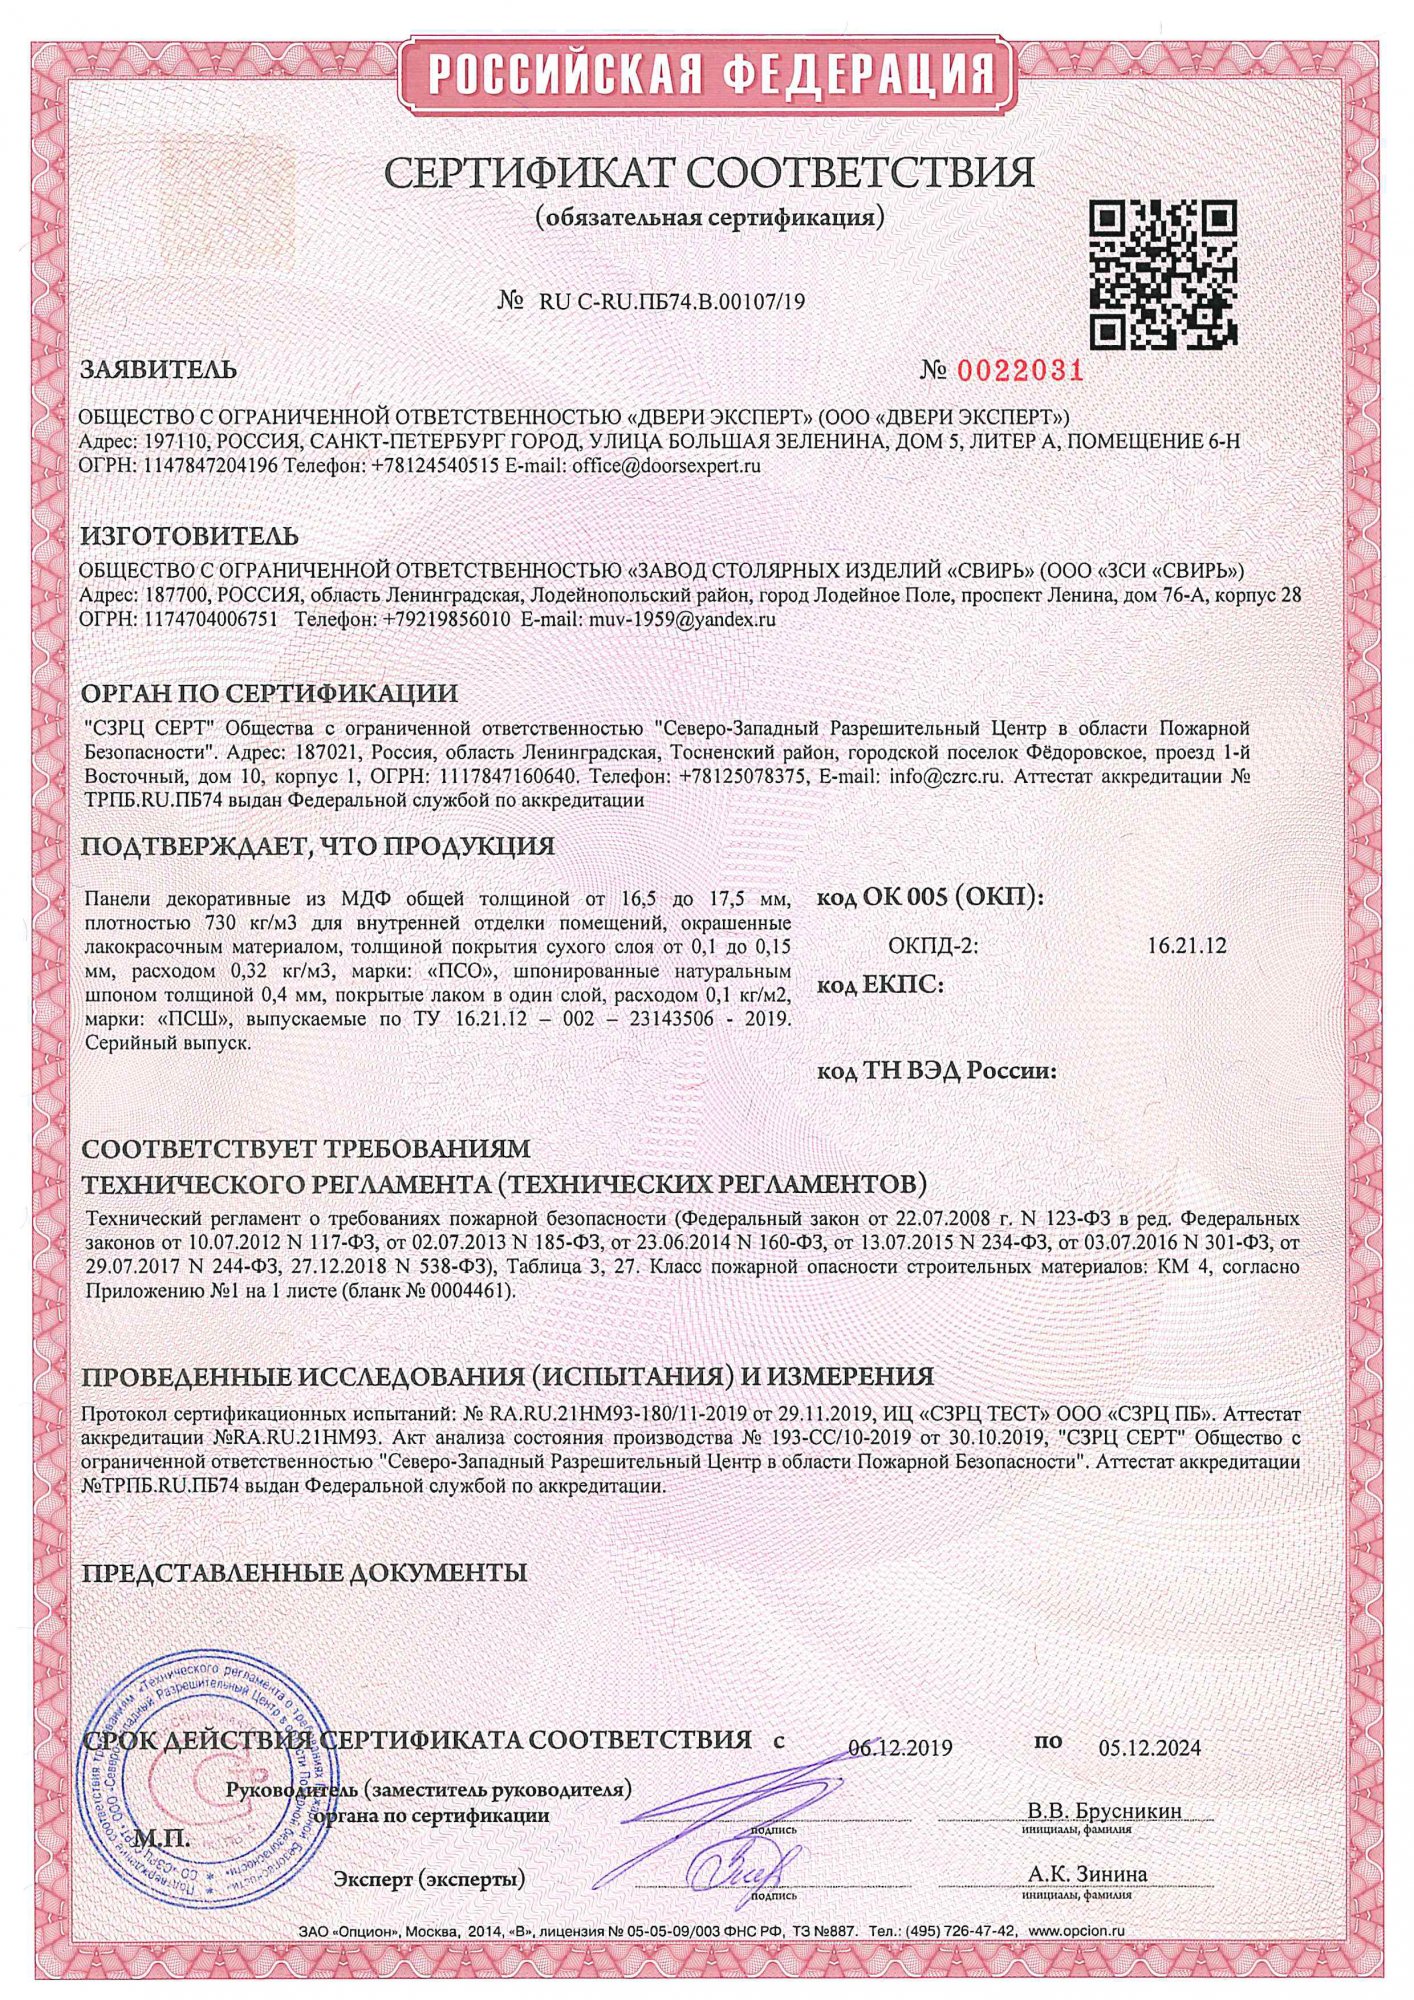 Сертификат панели RU-С-RU ПБ74.В